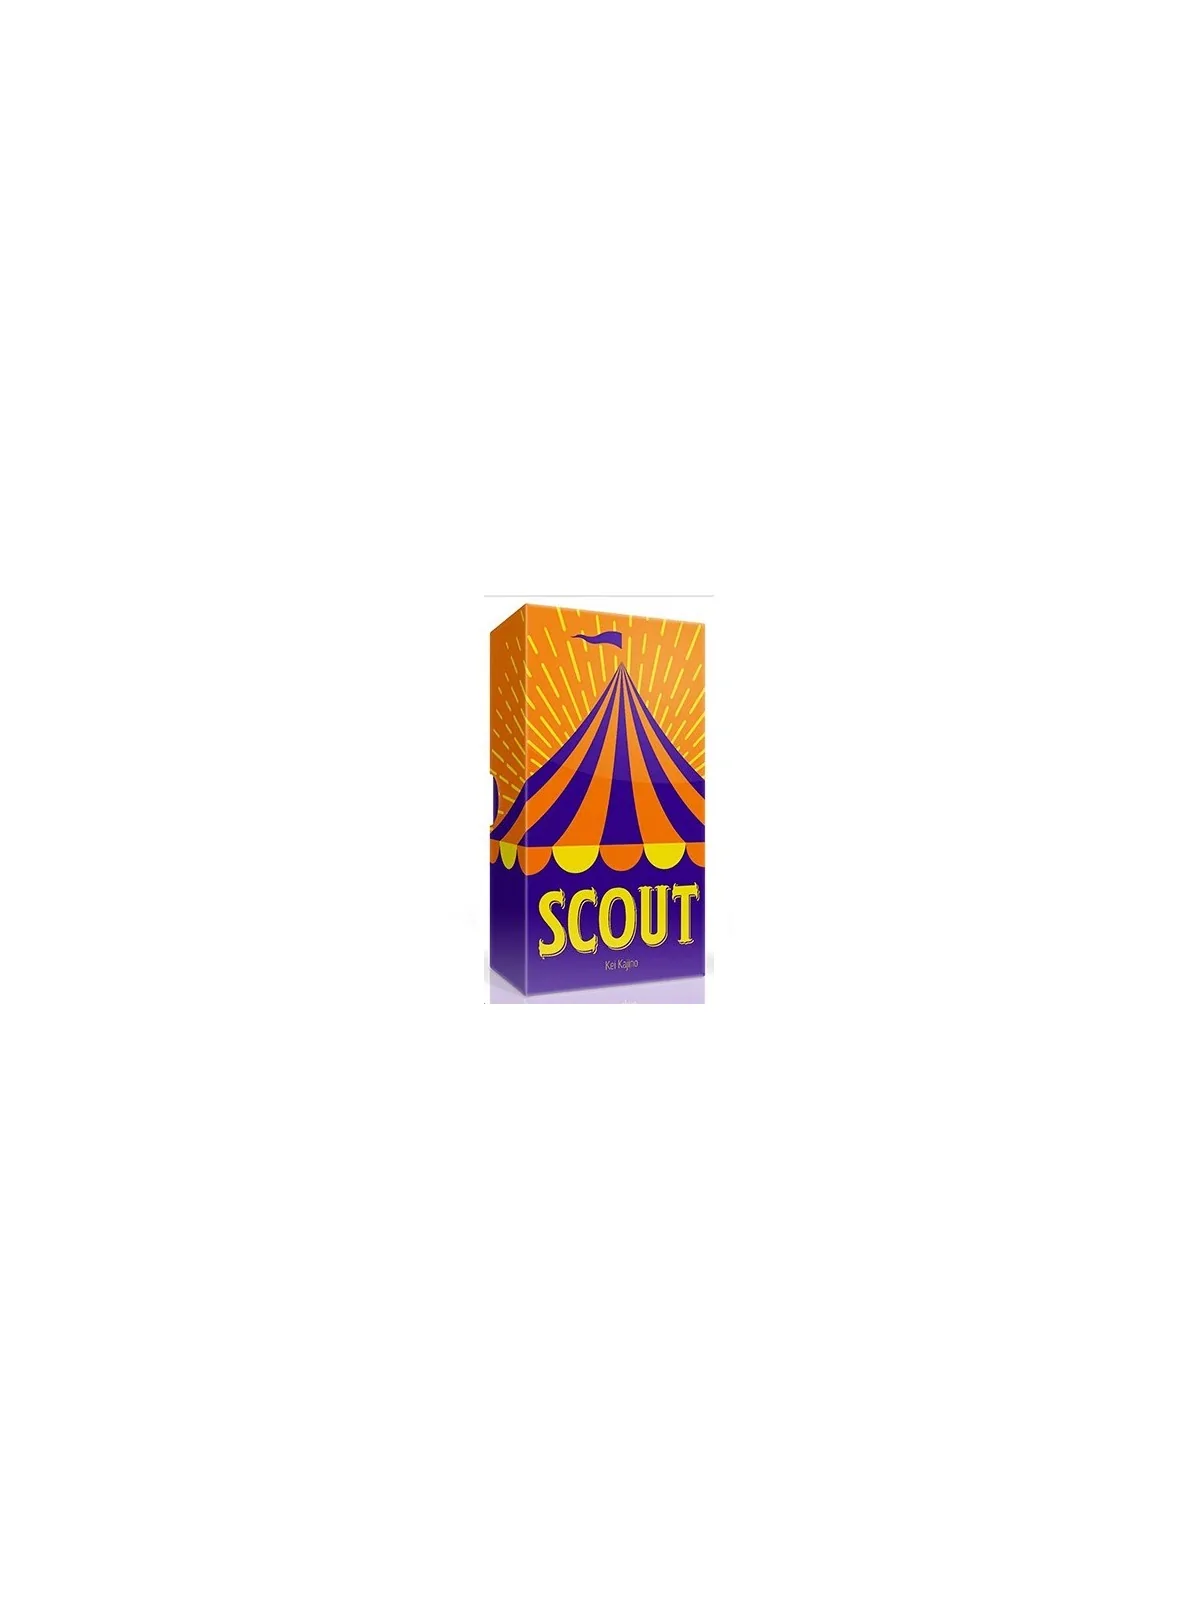 Comprar Scout barato al mejor precio 20,65 € de Gen X Games